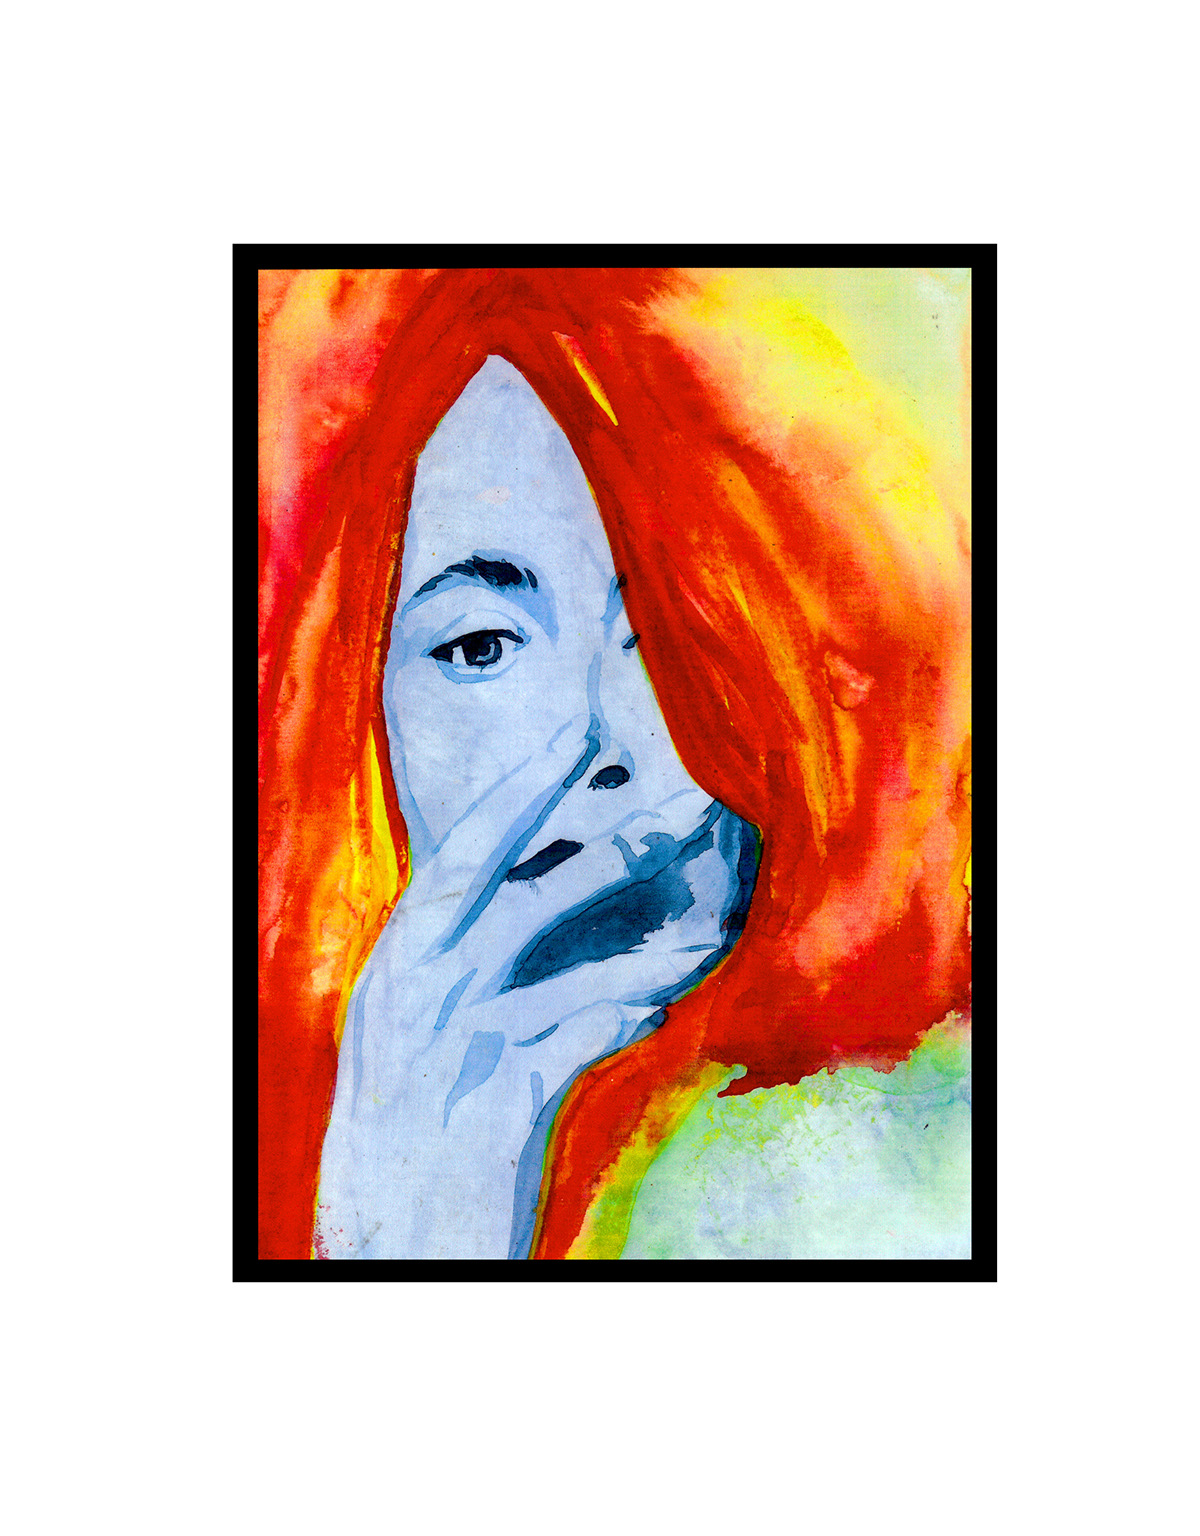 Suzanne Vega watercolor portrait